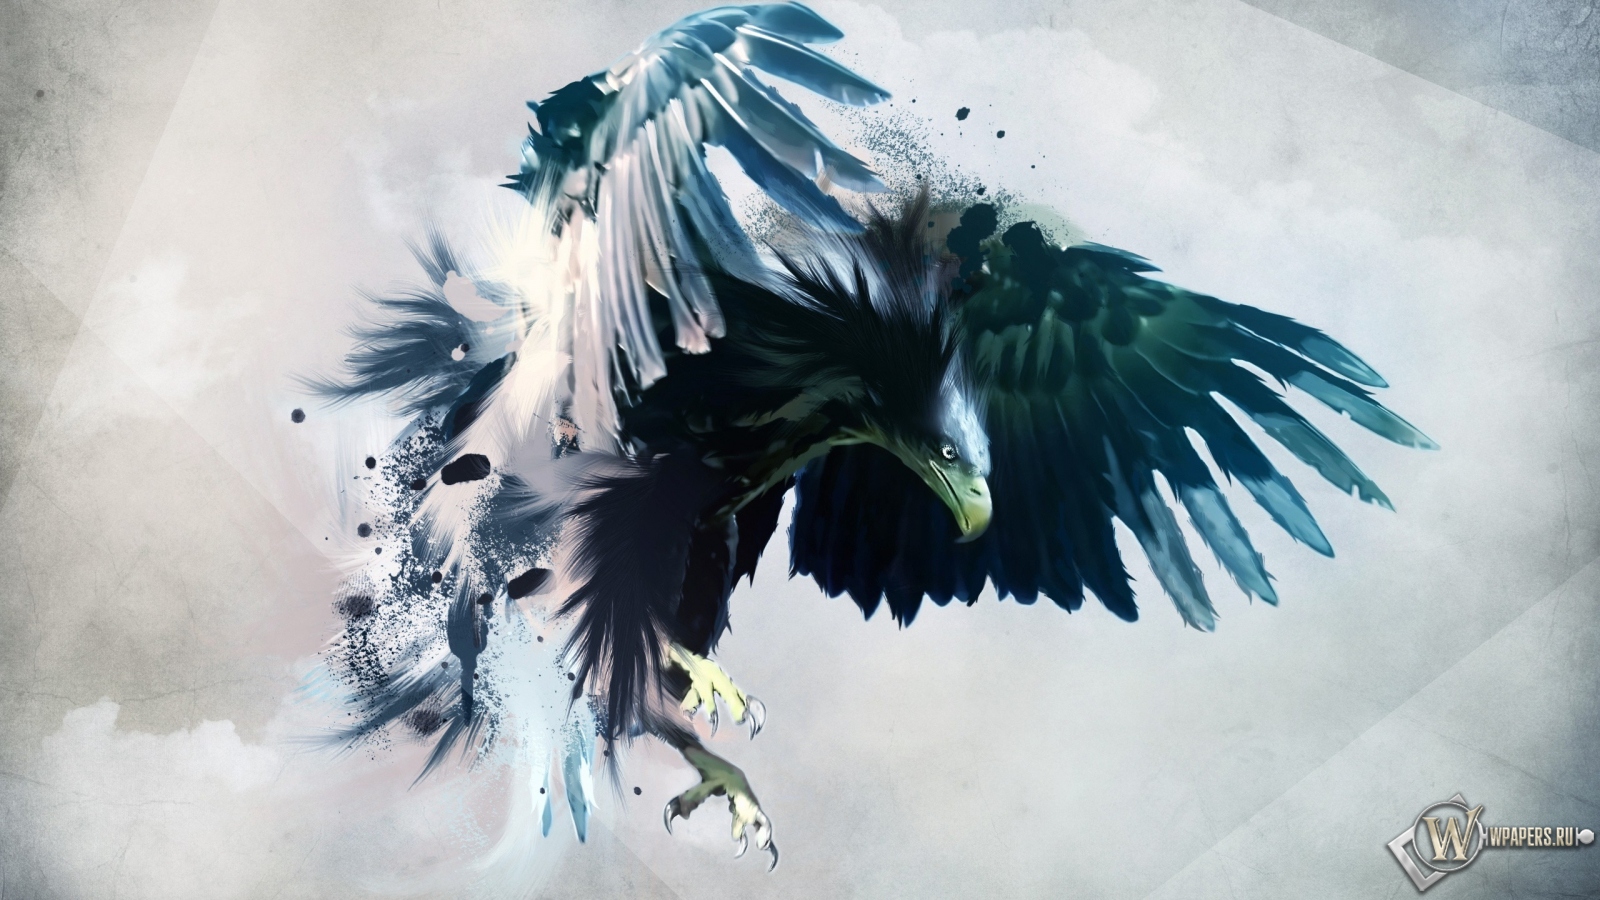 Artistic eagle 1600x900